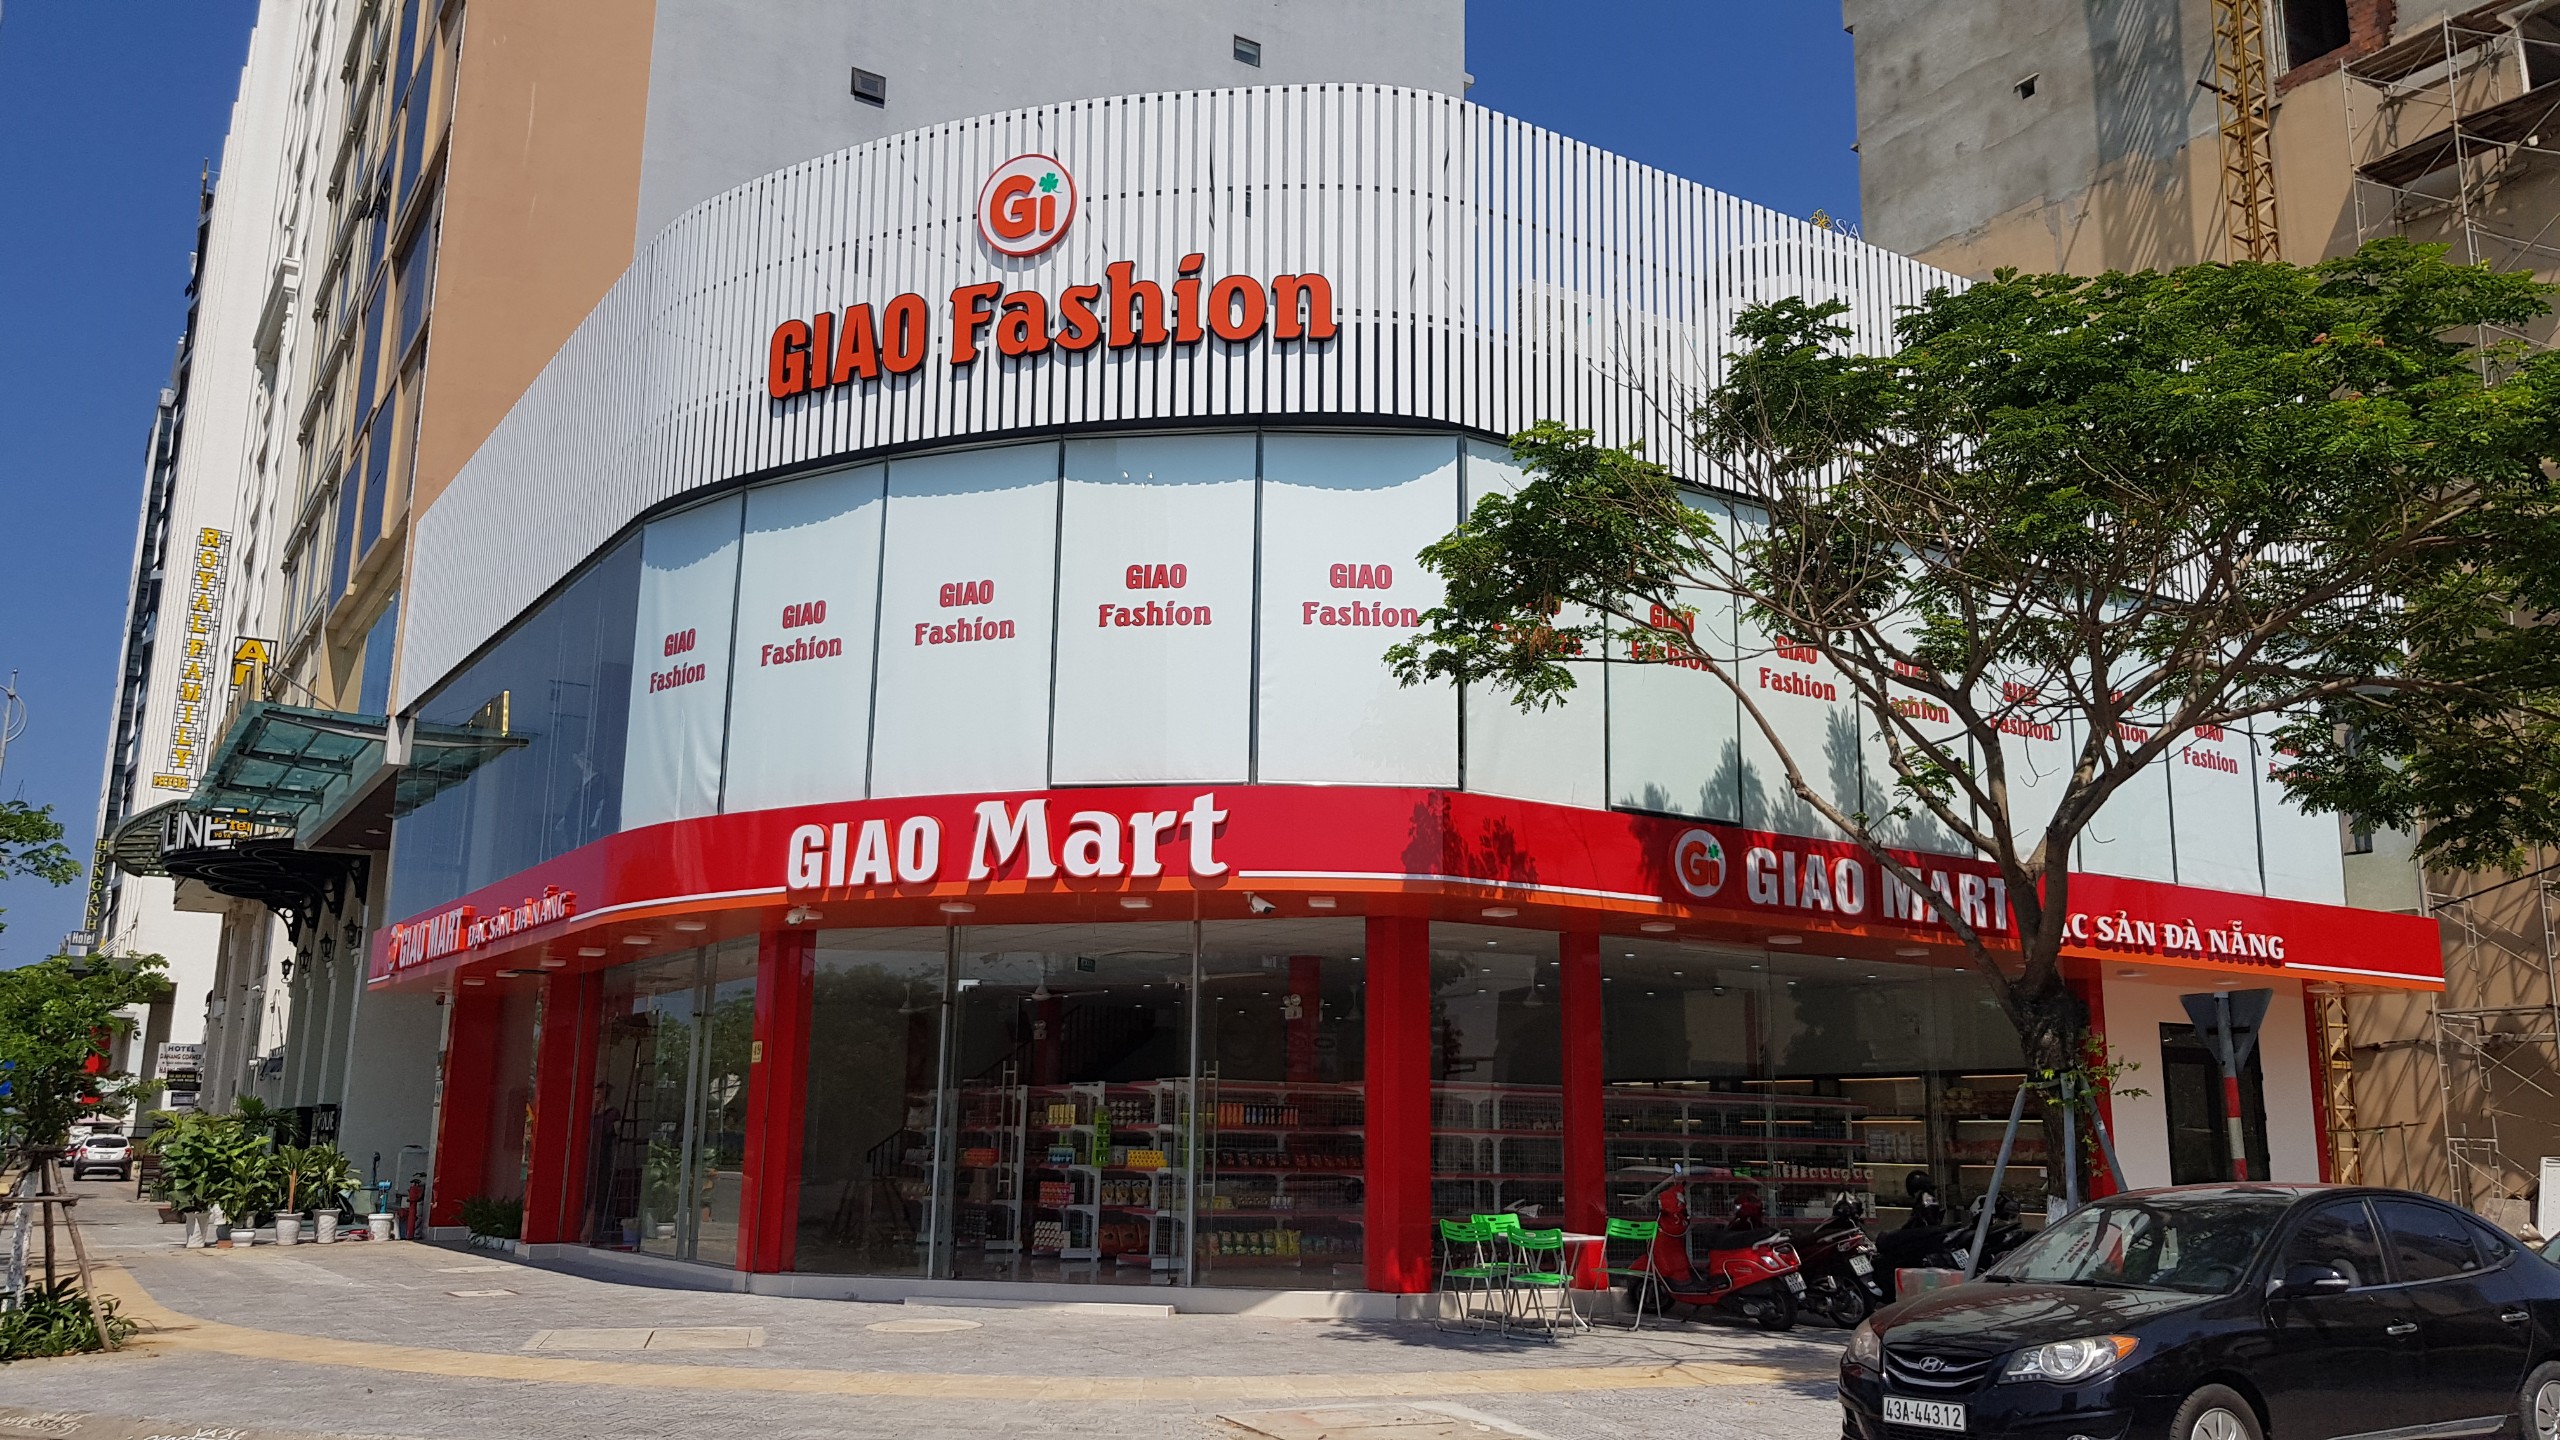 Đặc sản Đà Nẵng - Giao Mart 